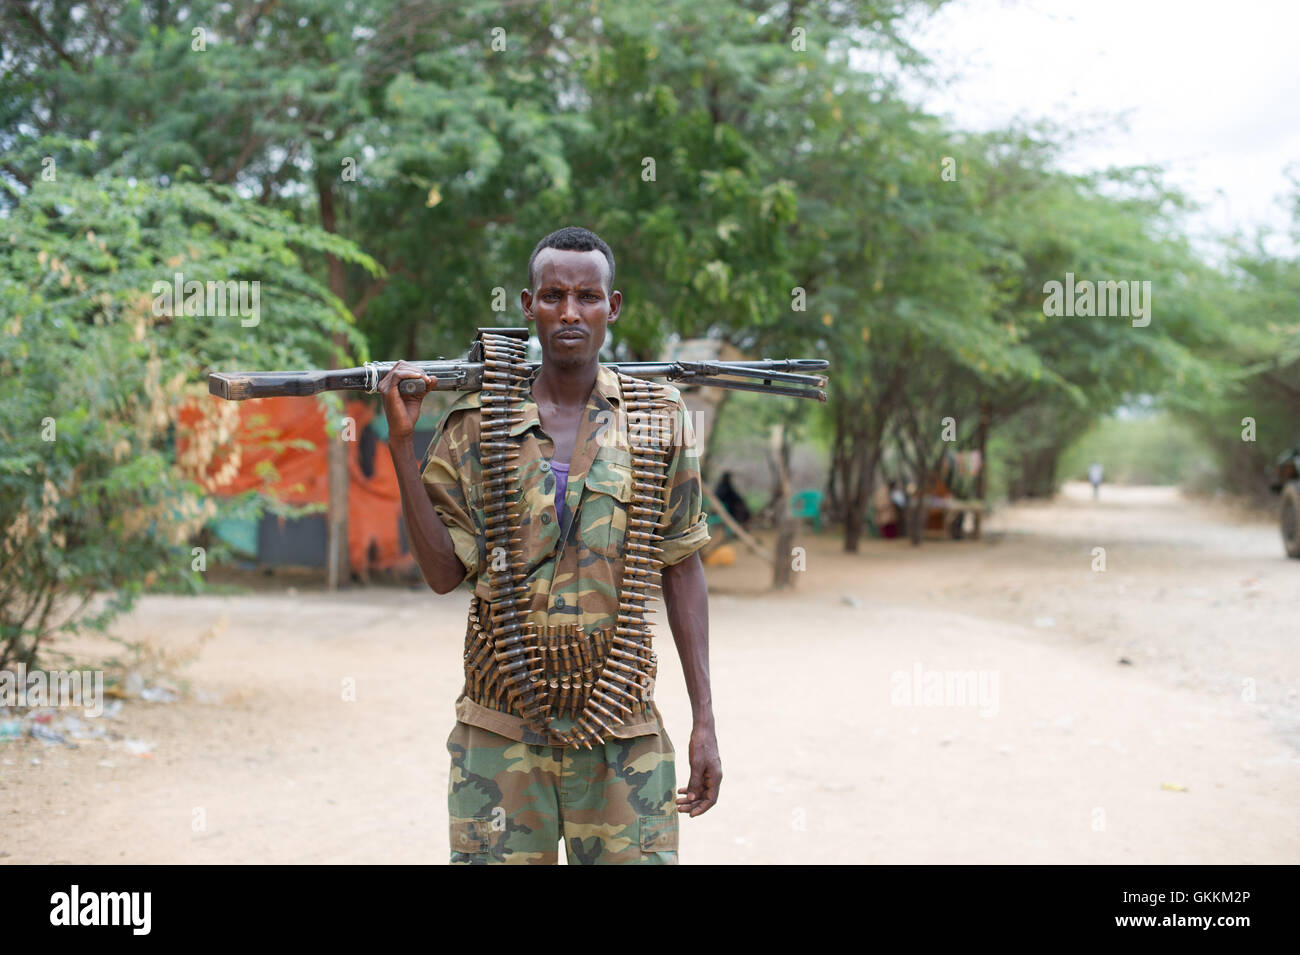 Eine somalische Soldaten auf Patrouille in Bardera, Somalia am 18. August 2015.  Mission der Afrikanischen Union in Somalia (AMISOM) unterstützen die somalische nationale Armee (SNA) vor kurzem befreit das Gebiet von der Al-Qaida-nahen Extremistengruppe Al Shabaab. AMISOM Foto / Ilyas Ahmed Stockfoto